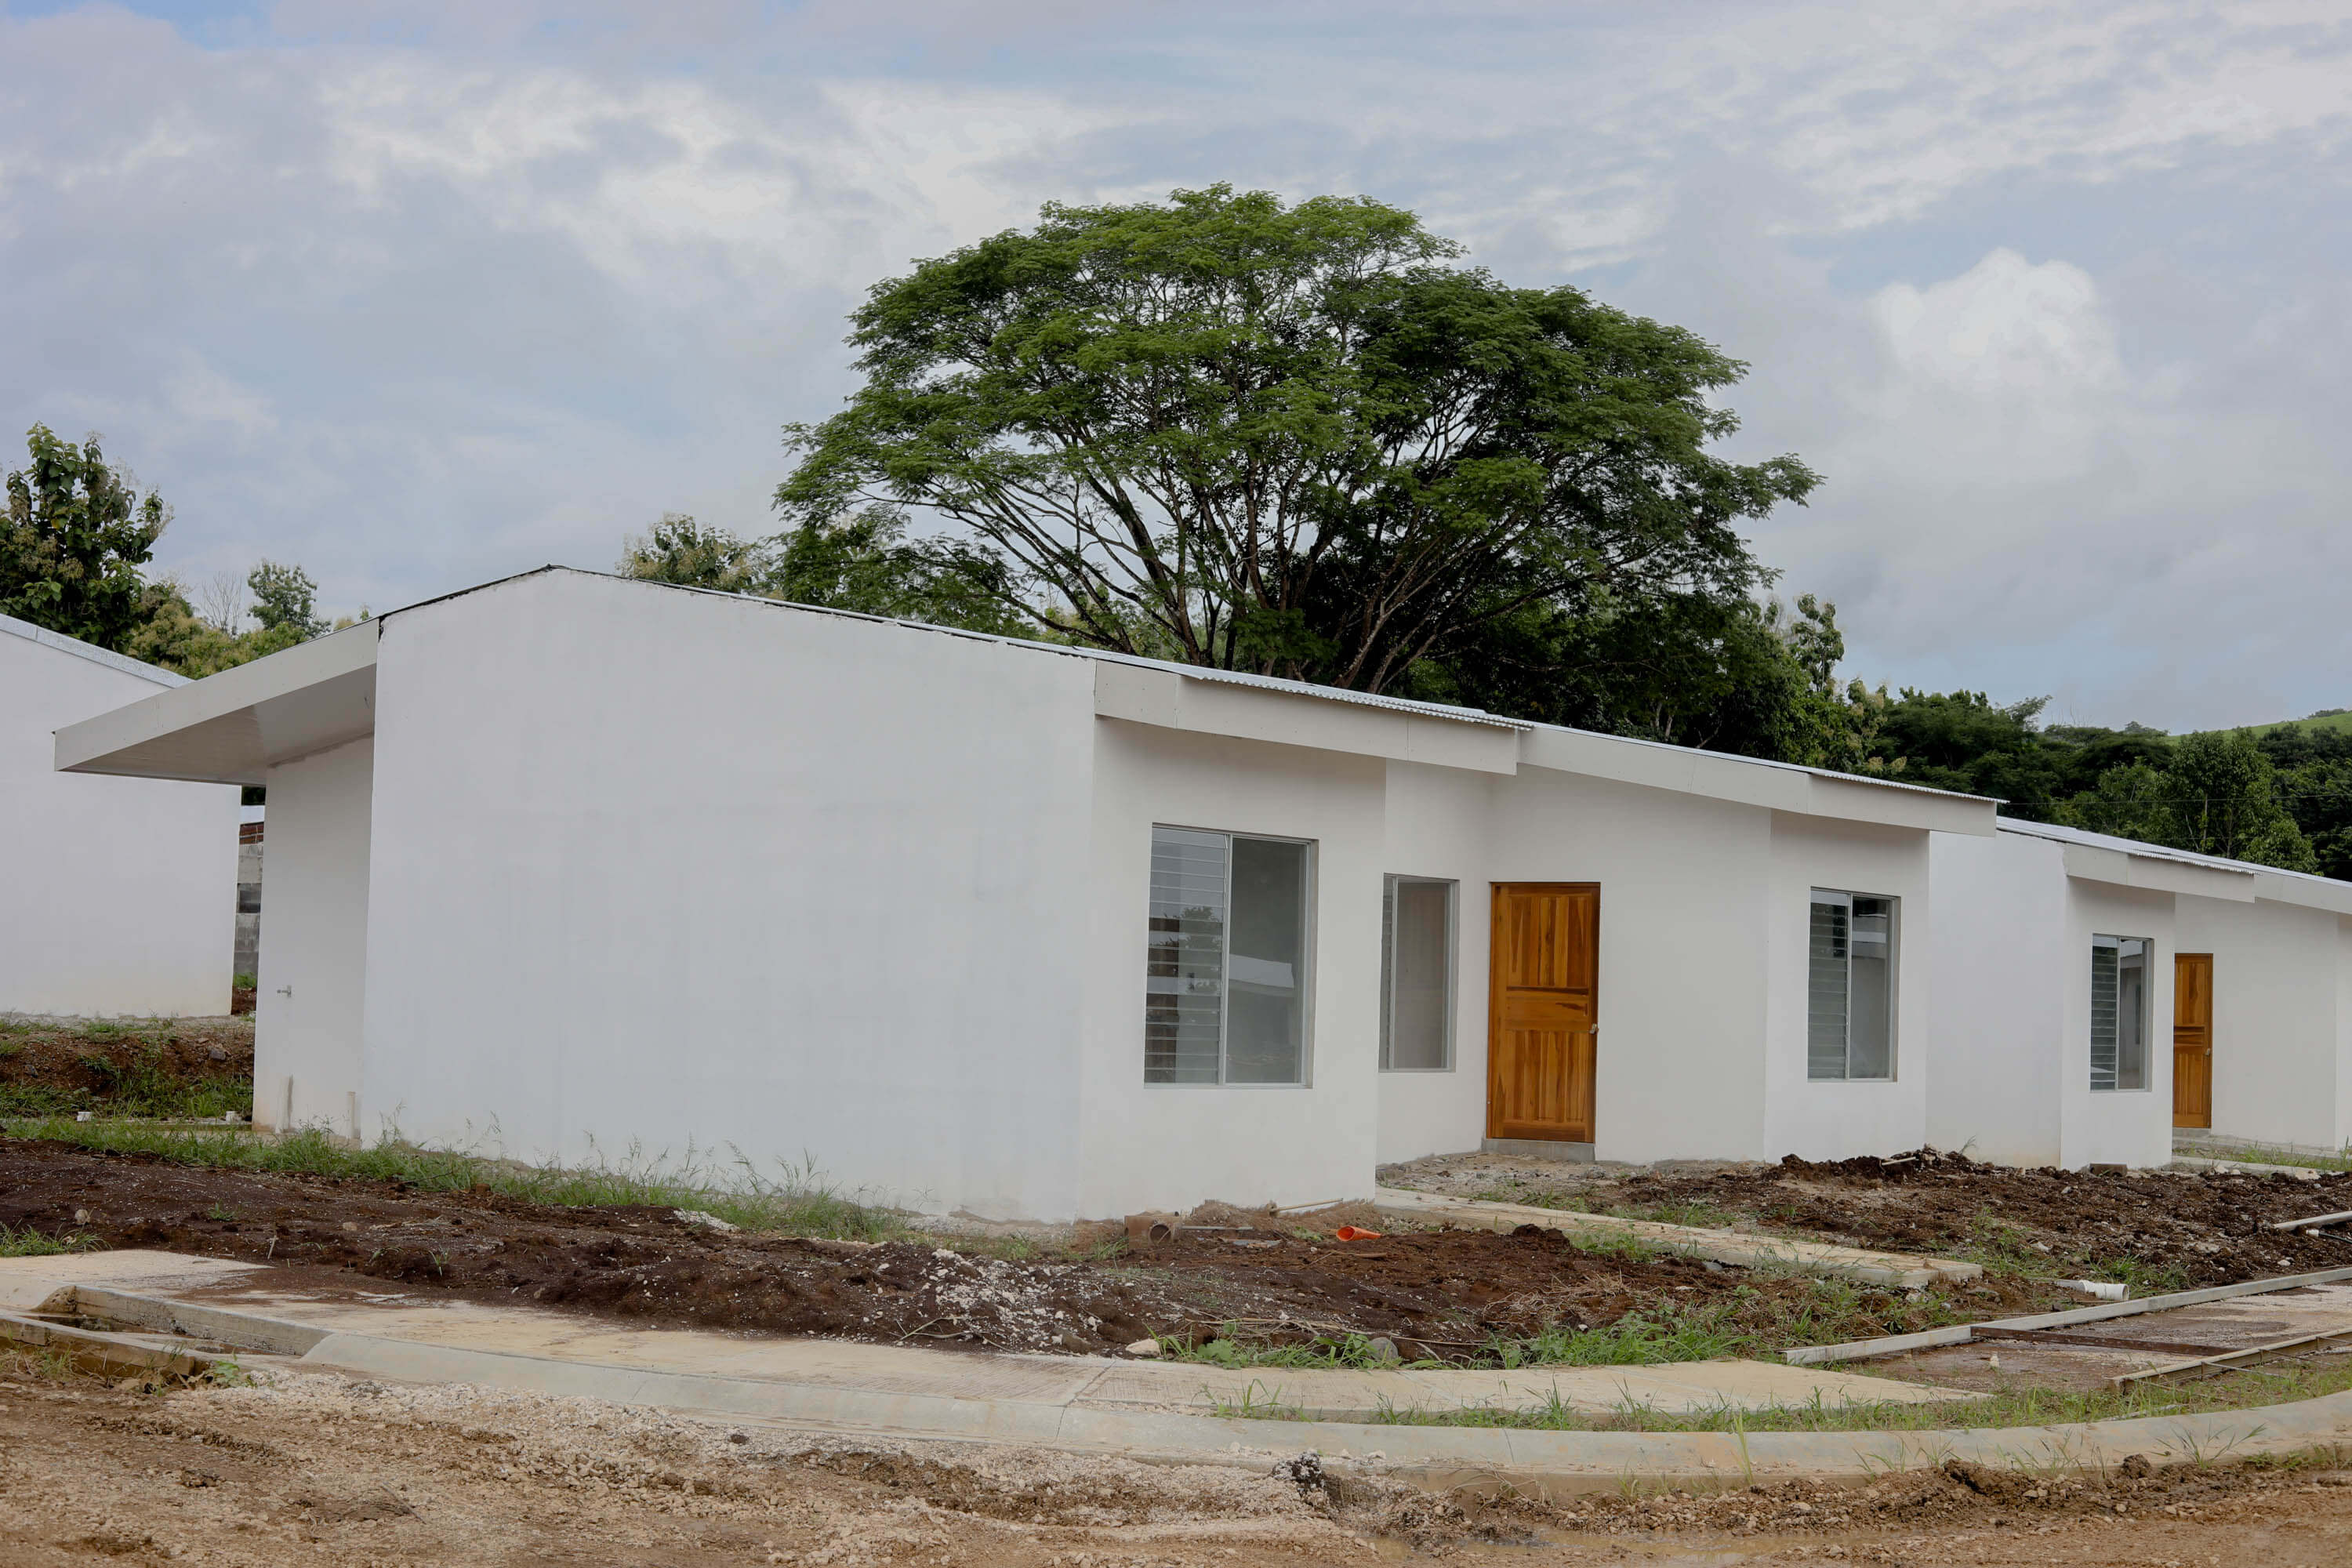 El proyecto se construye en terrenos del INVU, cerca del centro del Cantón de Hojancha, este brindará 78 soluciones a familias de la zona, dos casas levantadas, tintadas de blanco